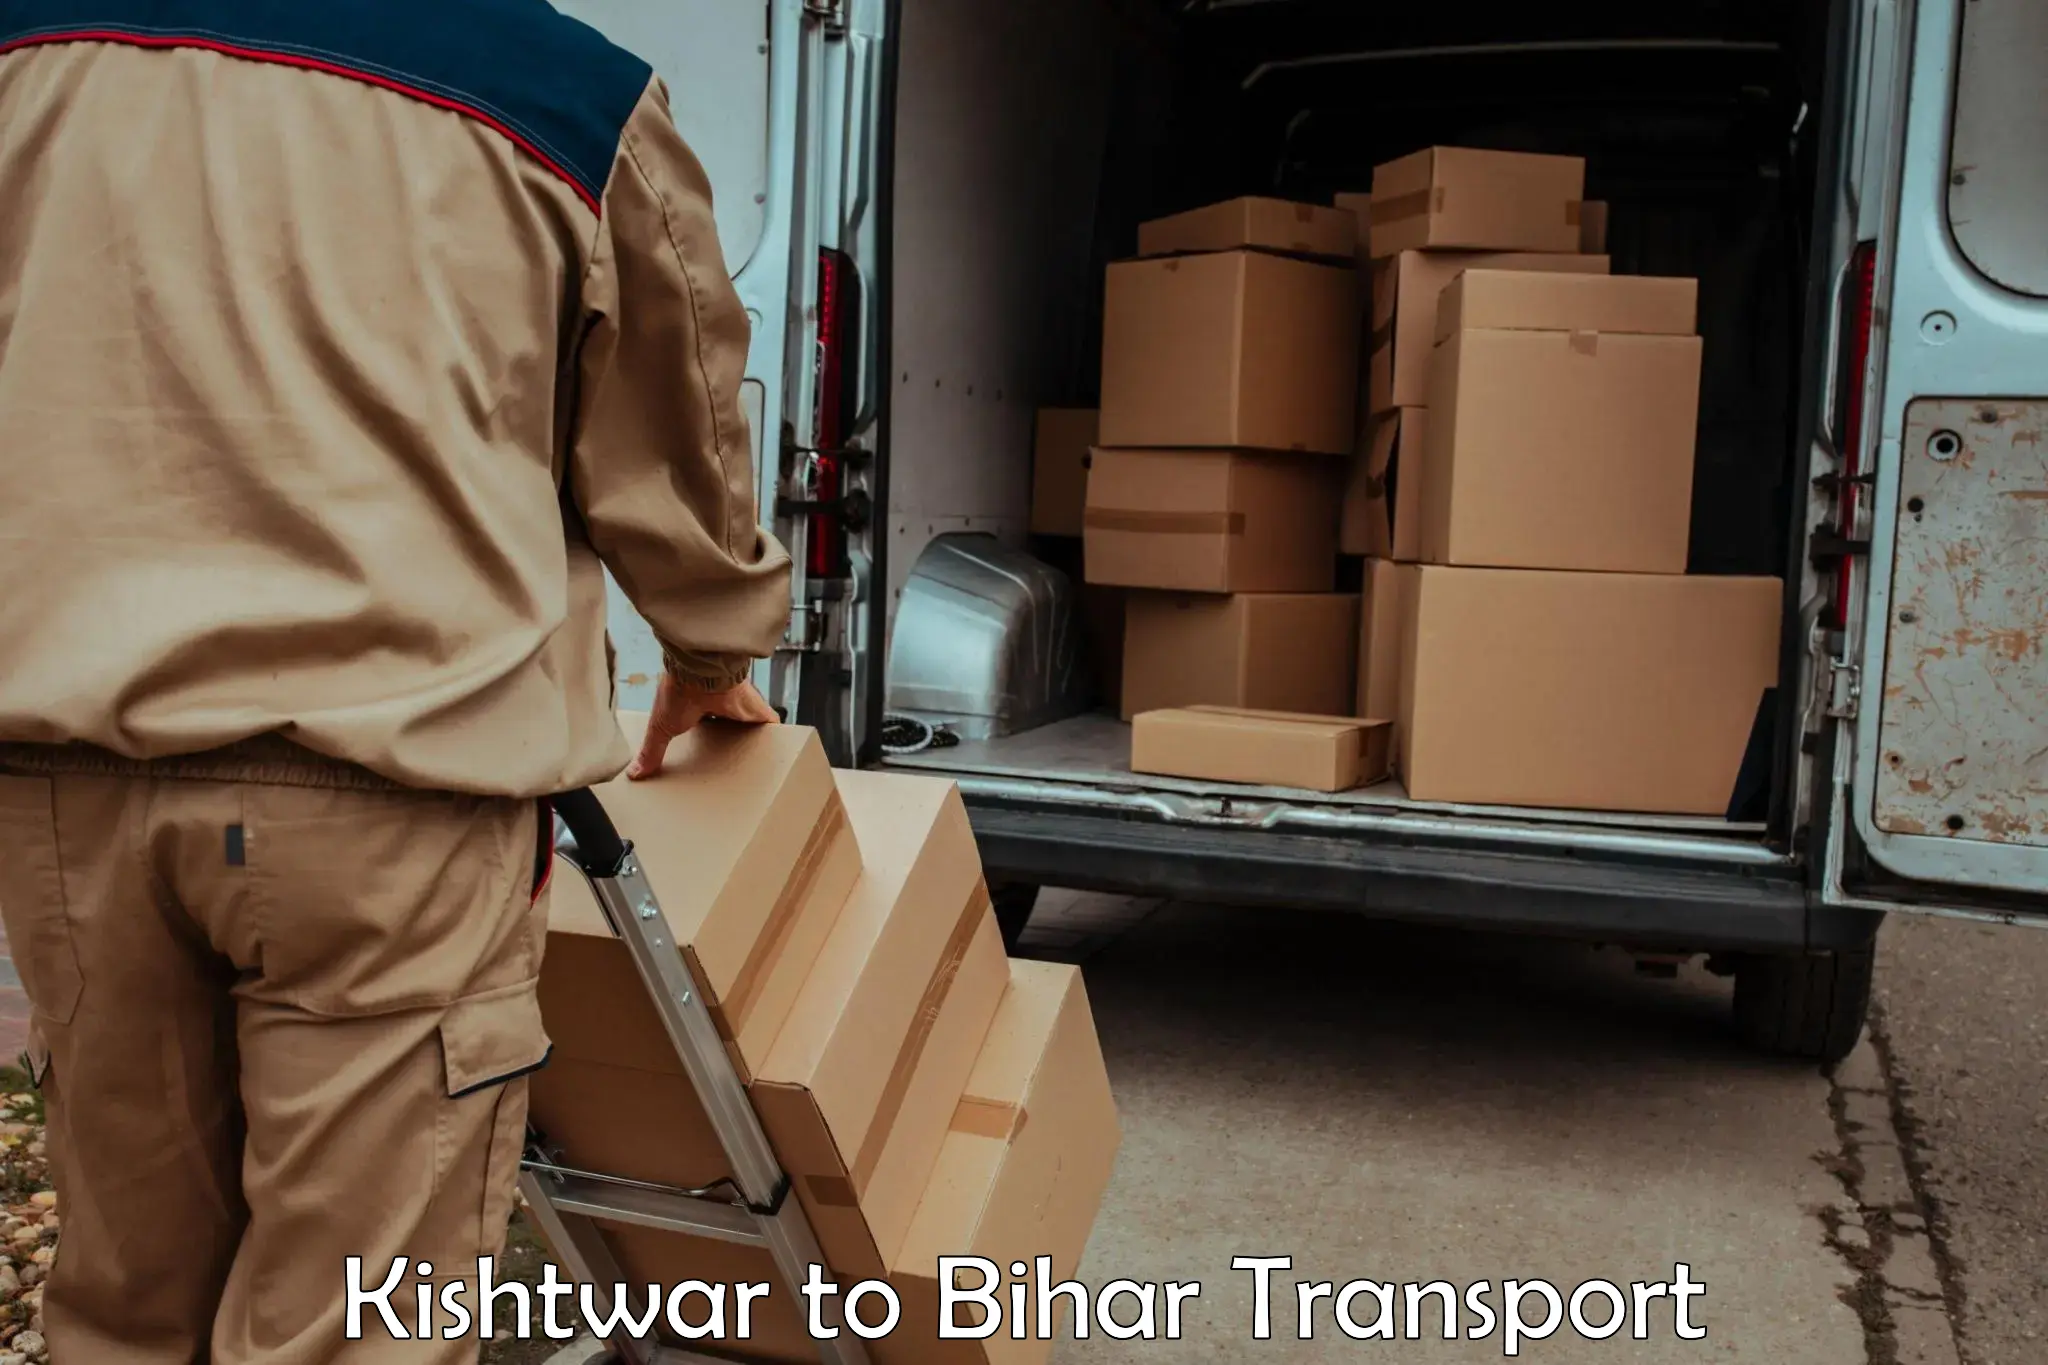 Luggage transport services Kishtwar to Bikramganj